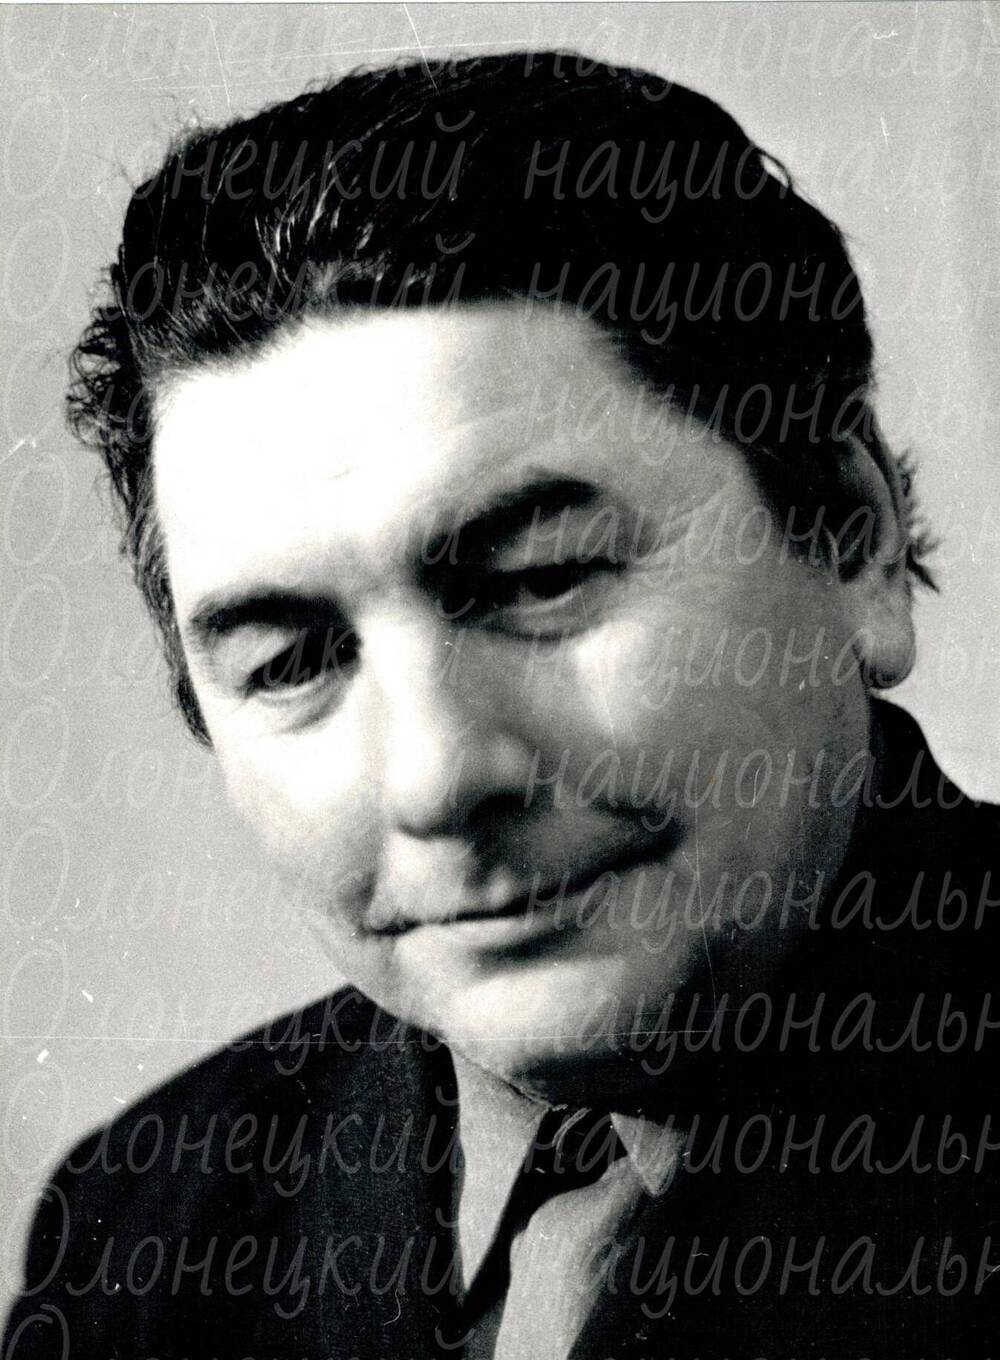 Фото, Владимир Брендоев, автор Казнин В.А., ч/б, 1978 г.